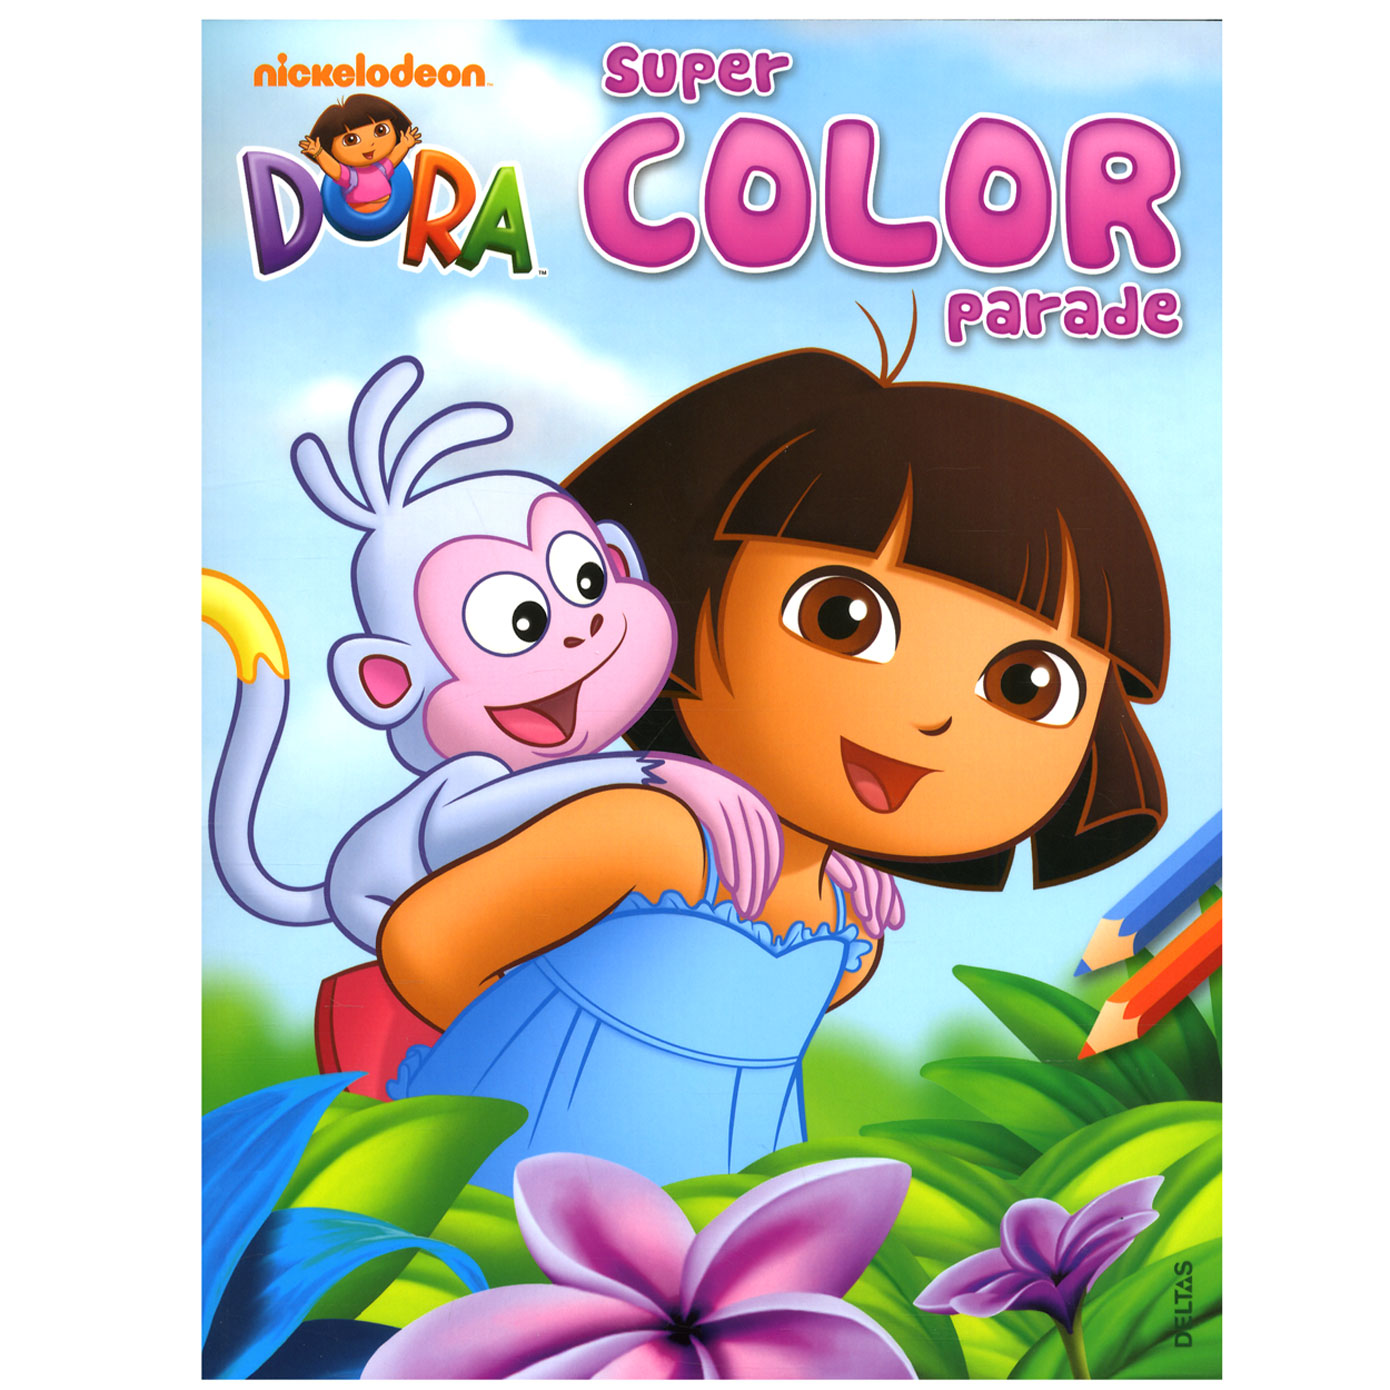 Dora Super Color Parade